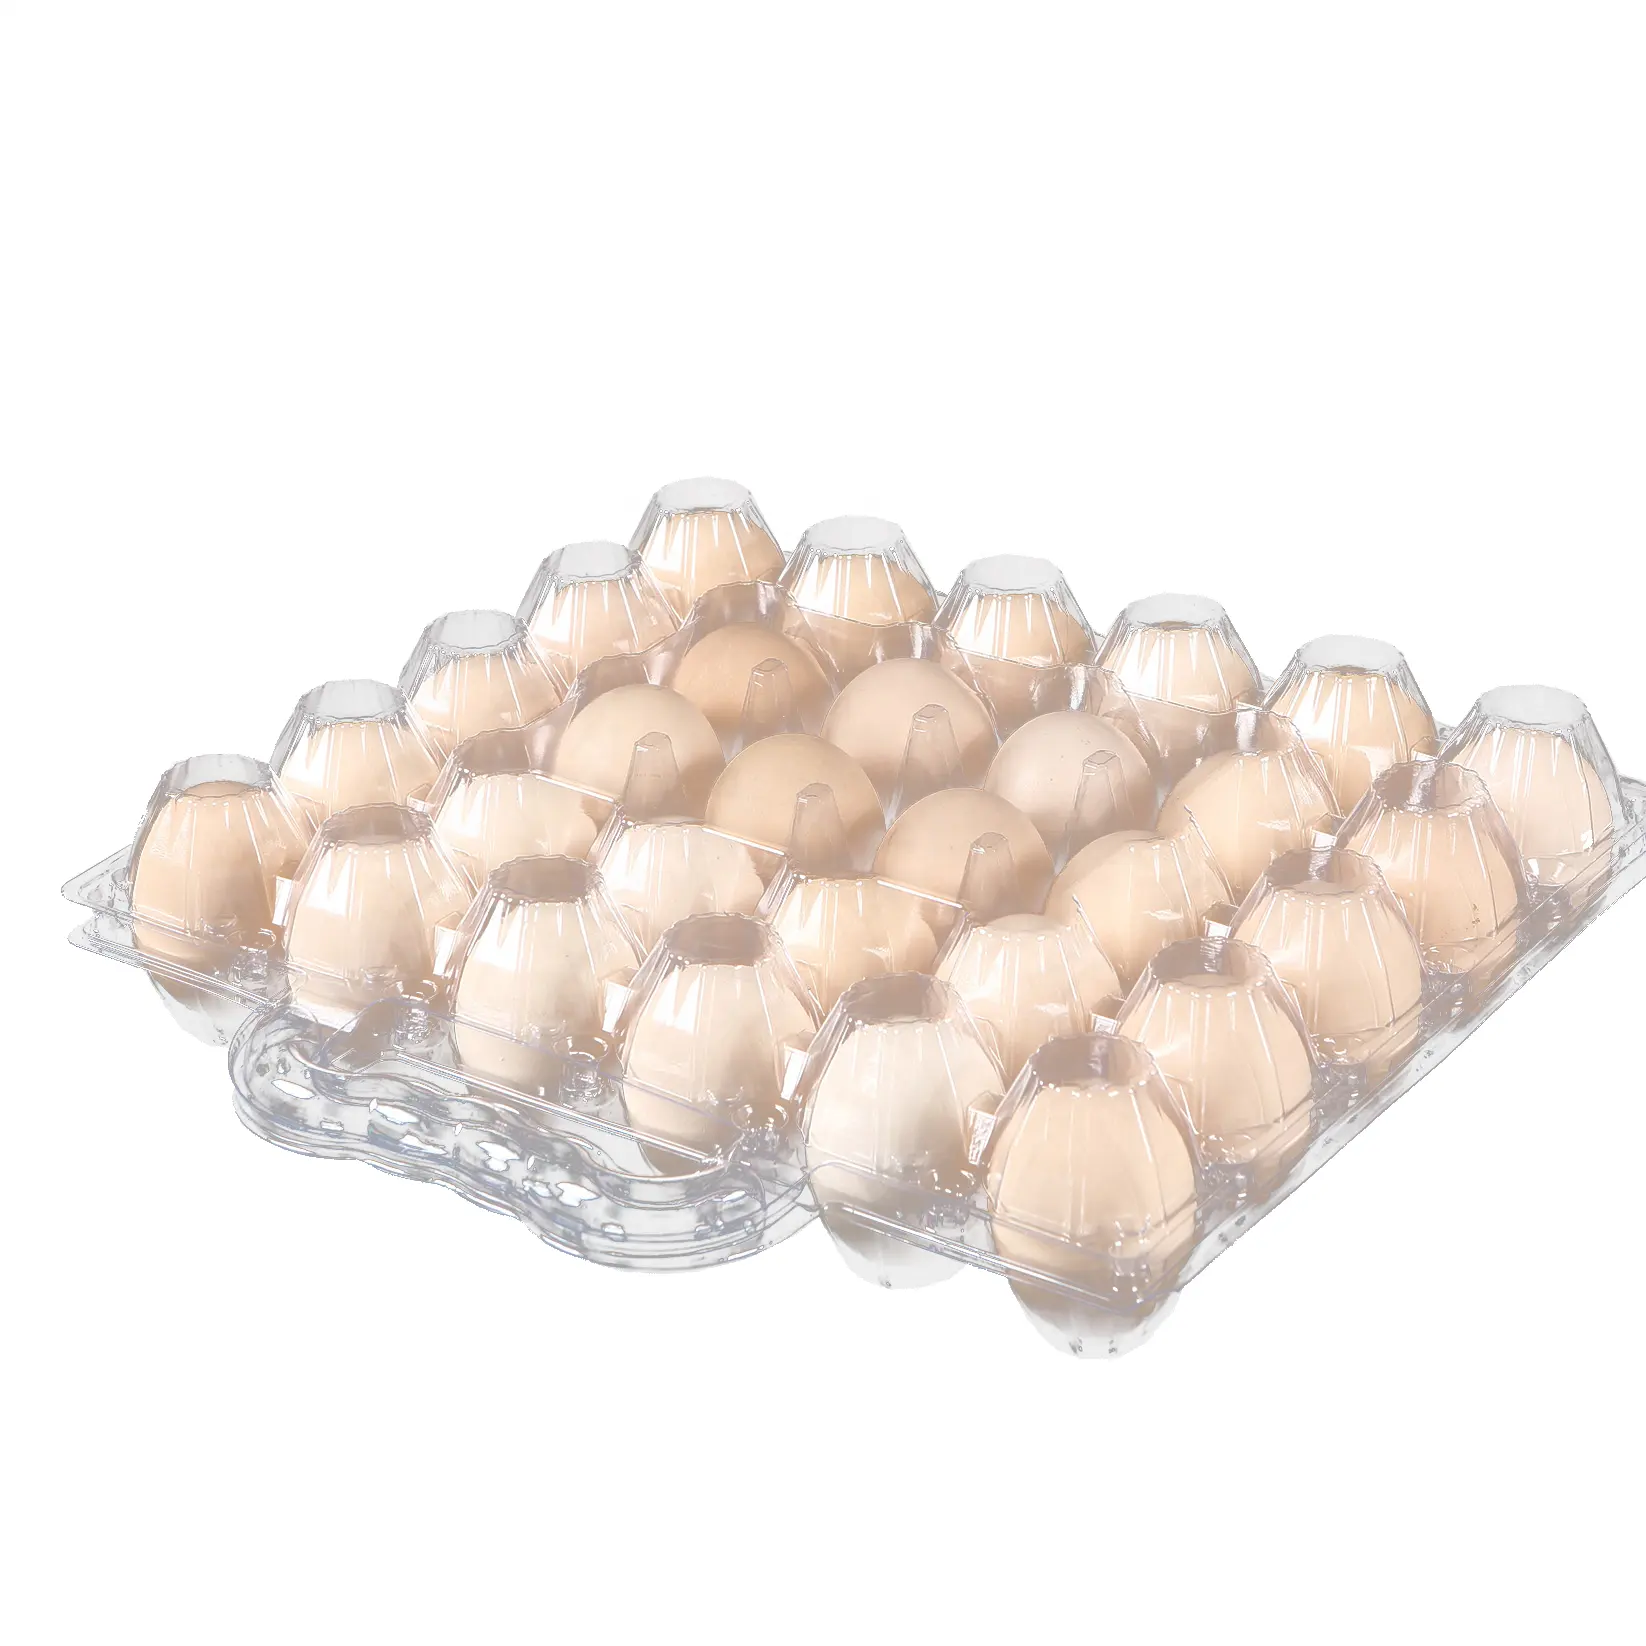 アヒルの卵用の大きな30個の卵トレイカートンハンドル付きの大きな卵プラスチック容器キャビティカウントOEM & ODMテーラーメイド